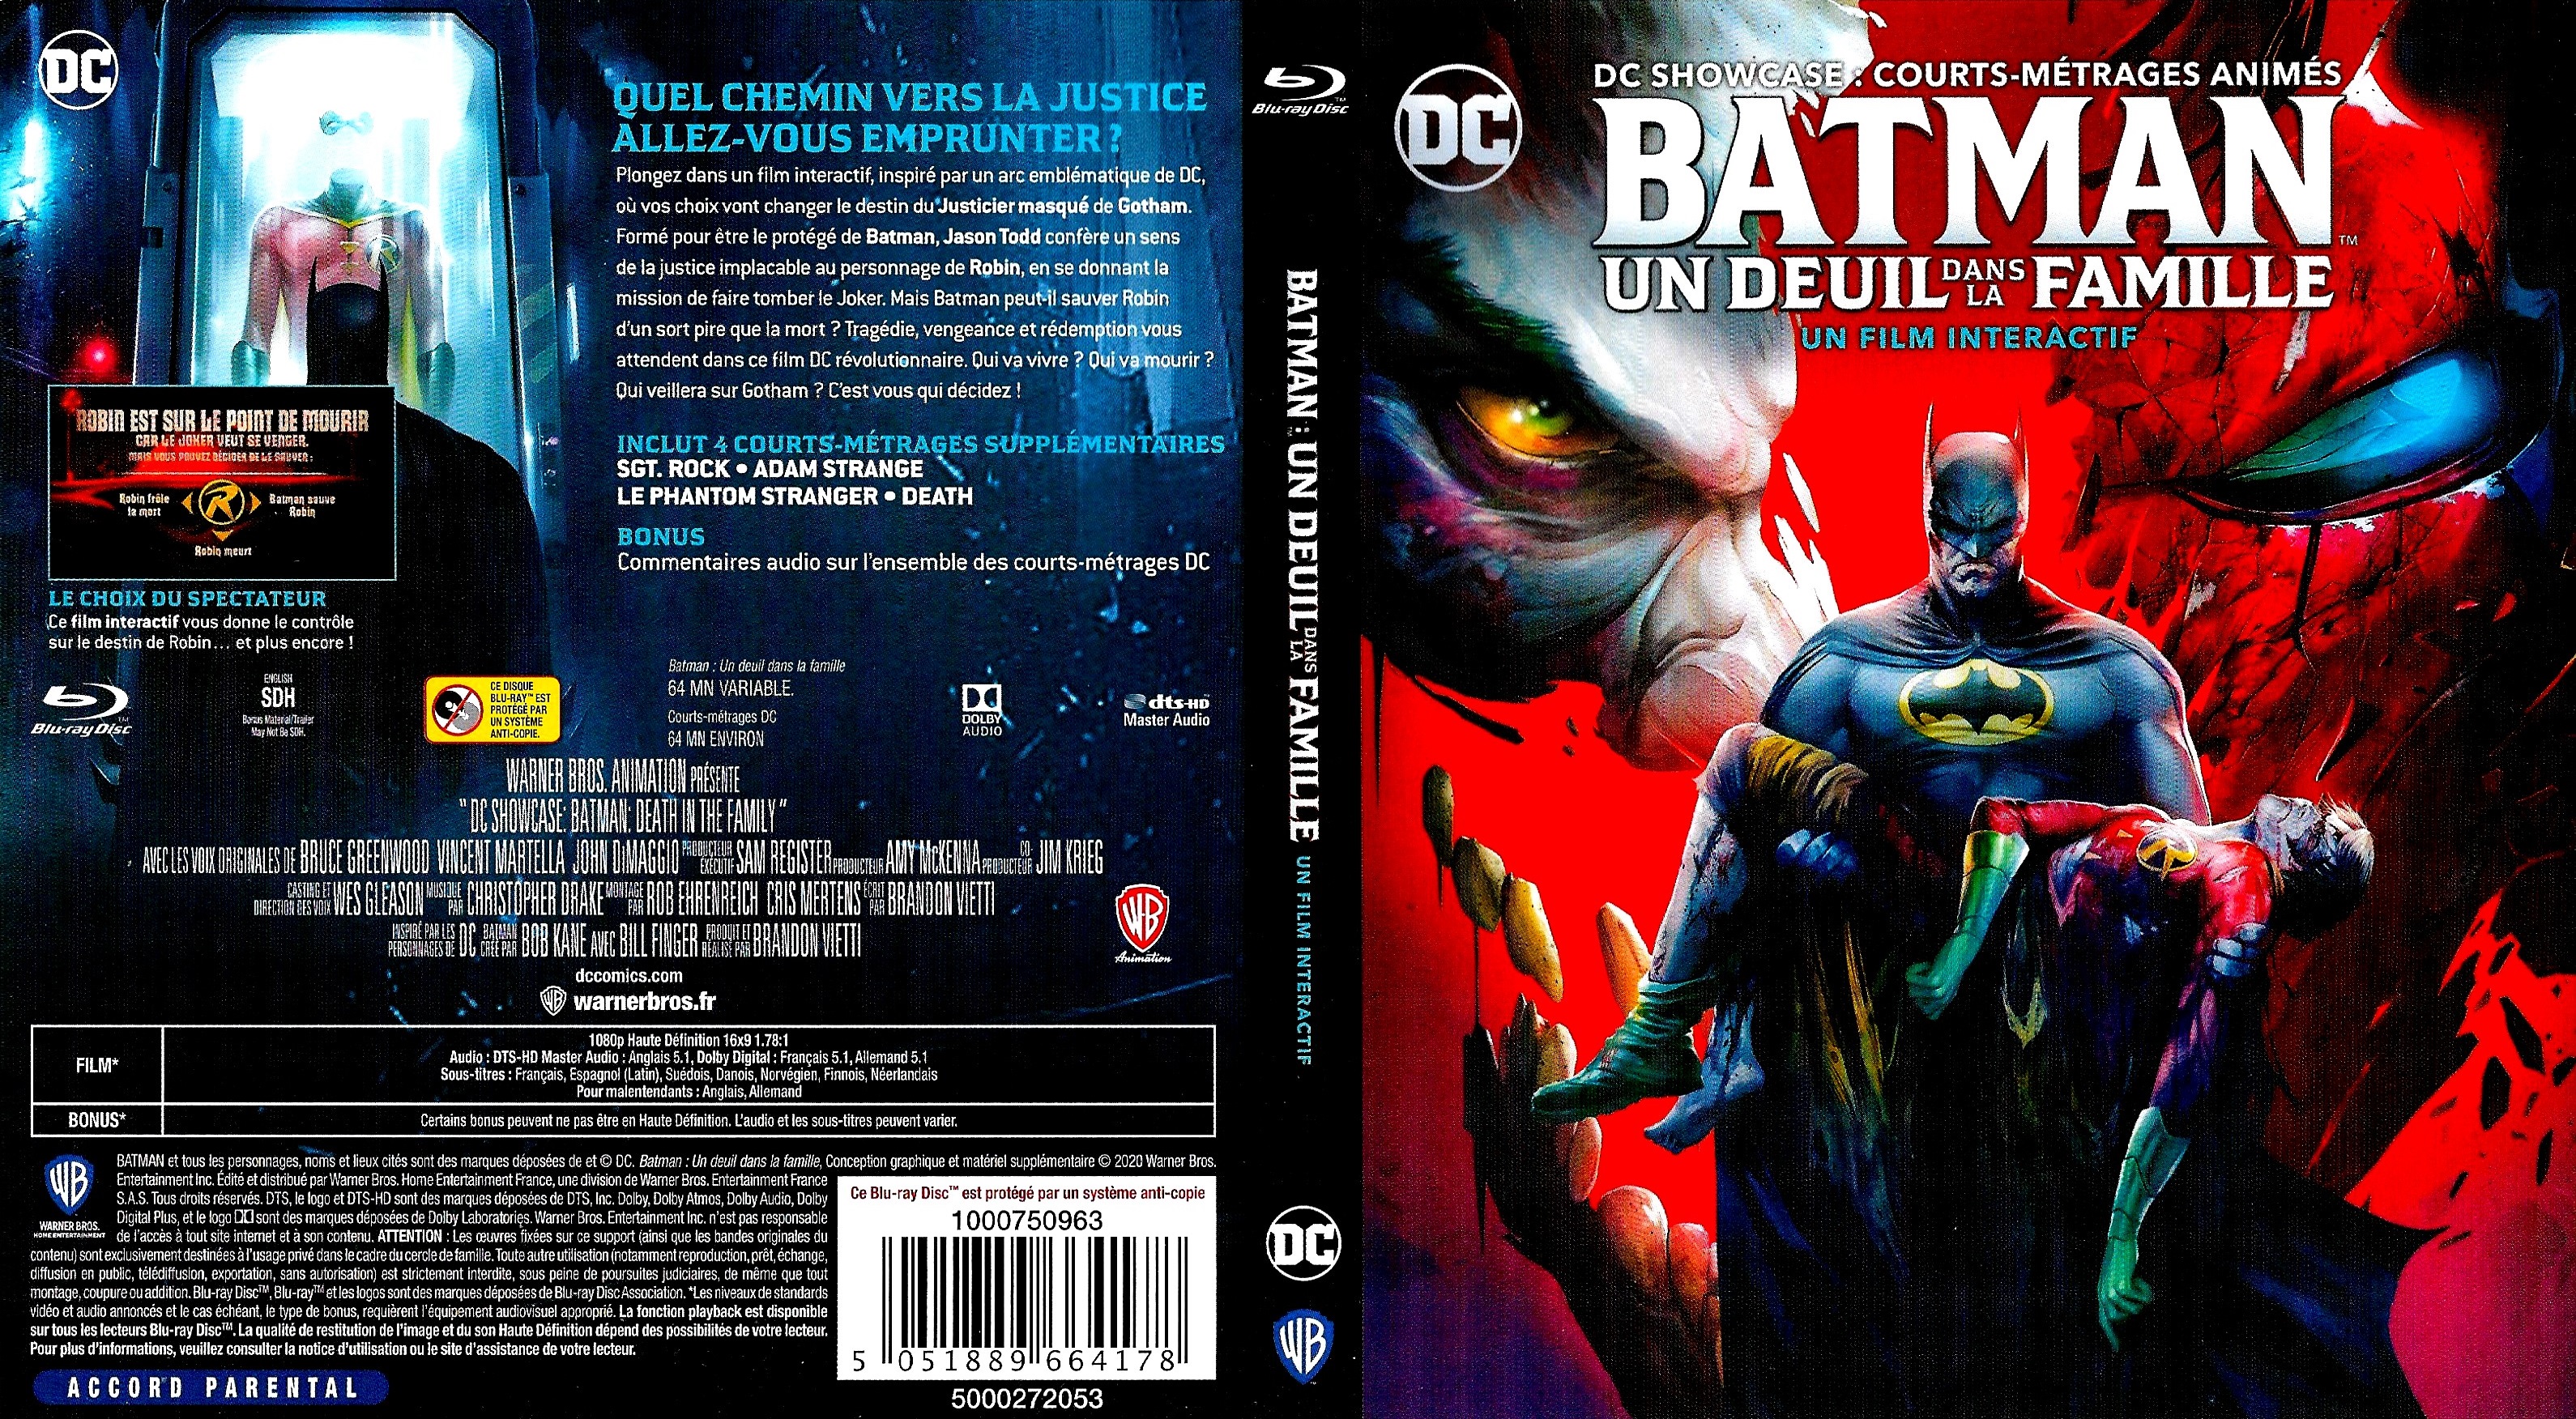 Jaquette DVD Batman Un Deuil dans la Famille (BLU-RAY)